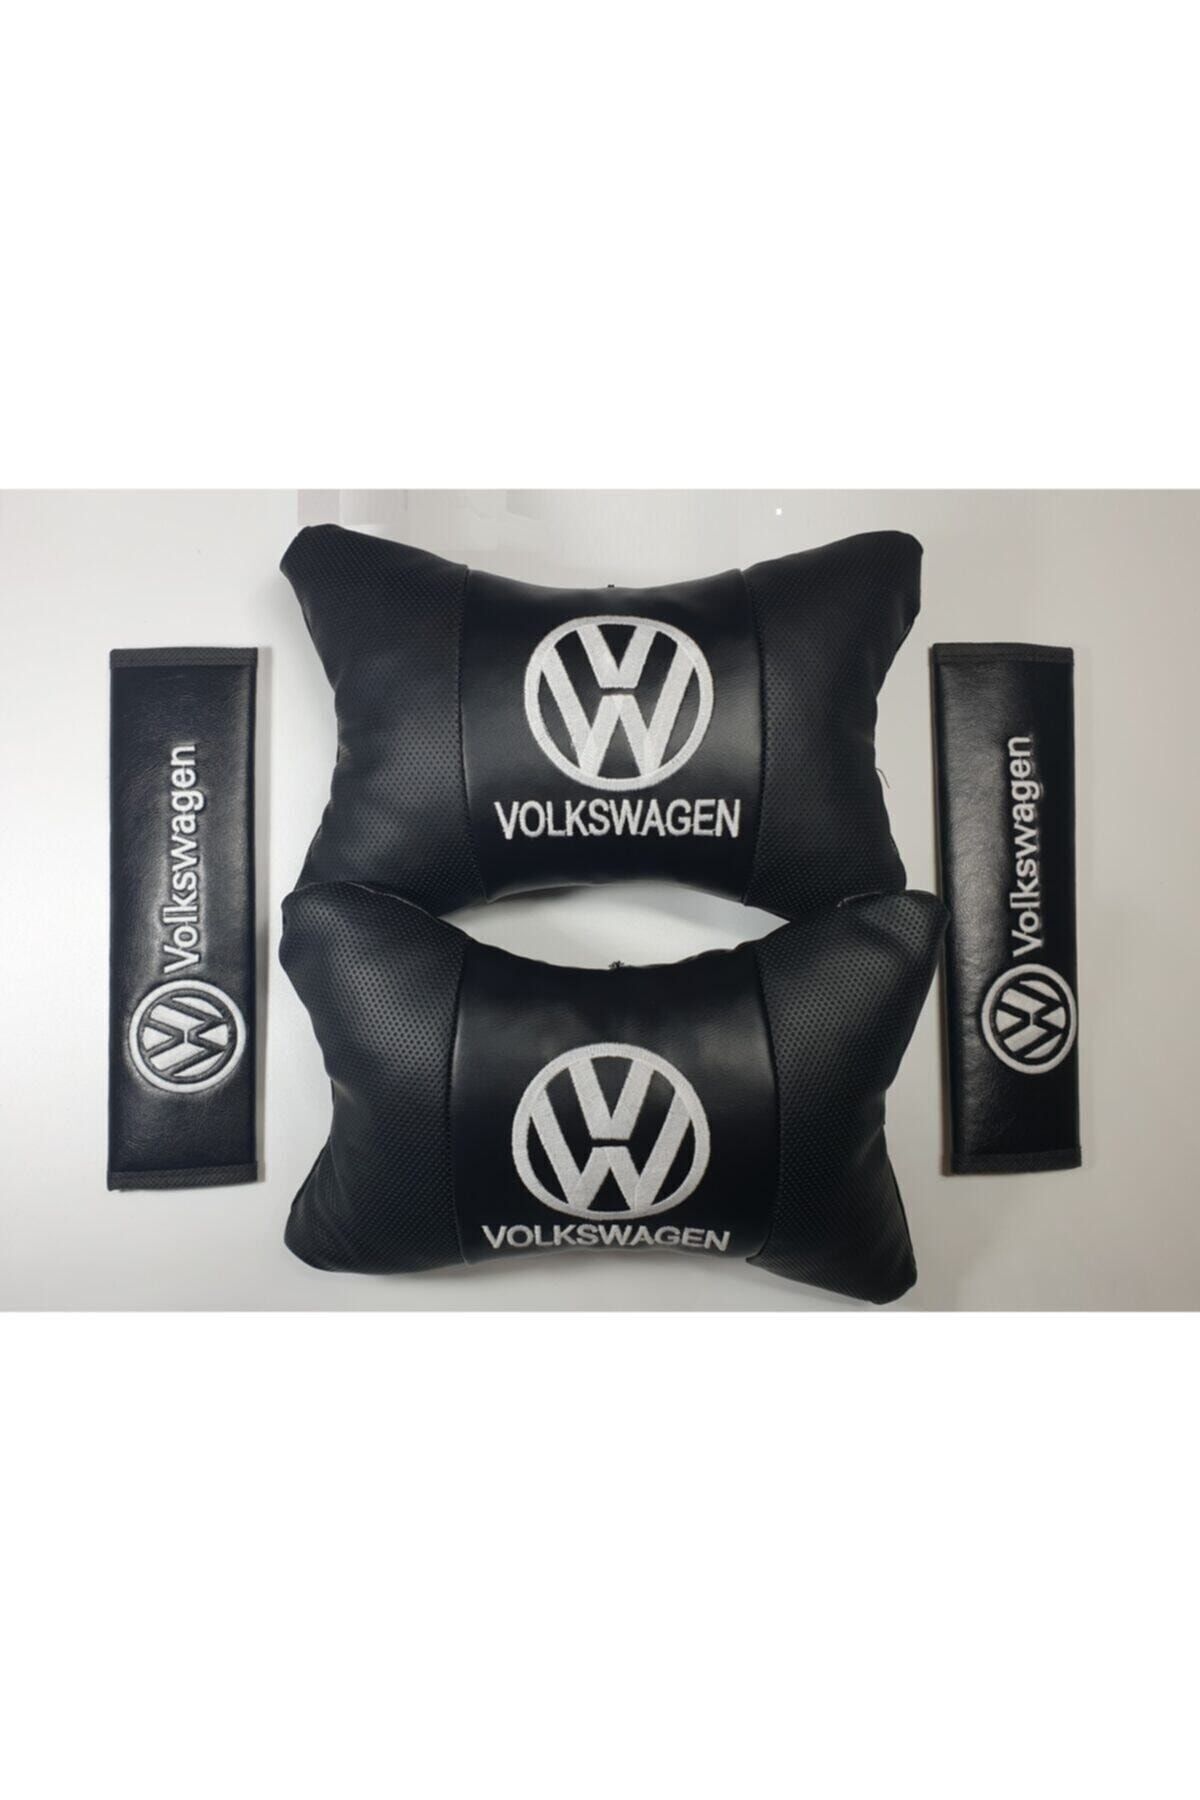 Volkswagen Beyaz Deri Yastık + Kemer Pedi -  Konfor Seti 2'li